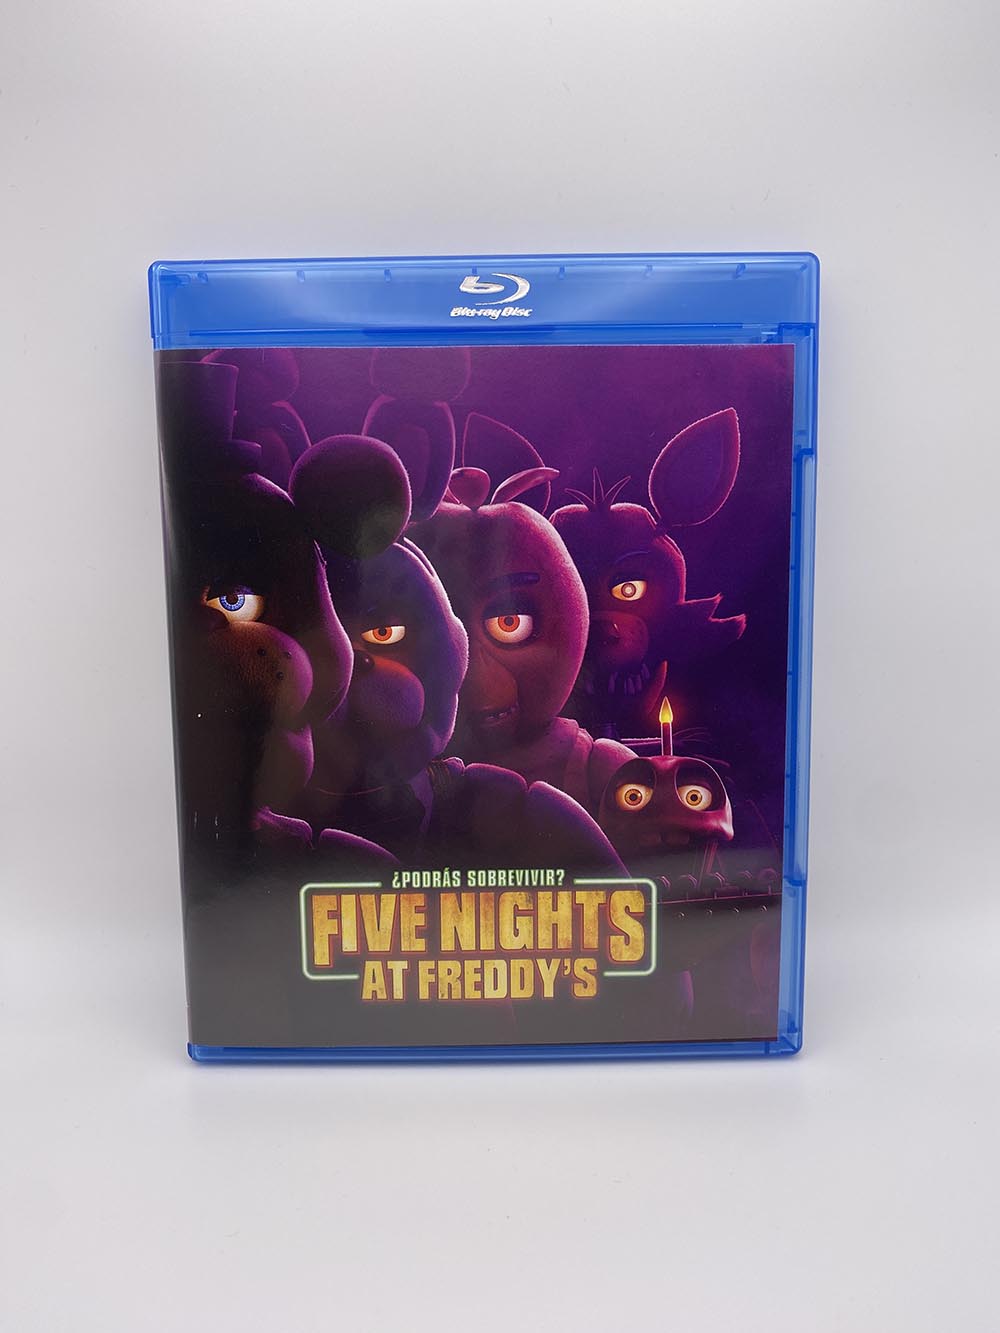 Análisis del Blu-ray de ‘Five Nights at Freddy’s’